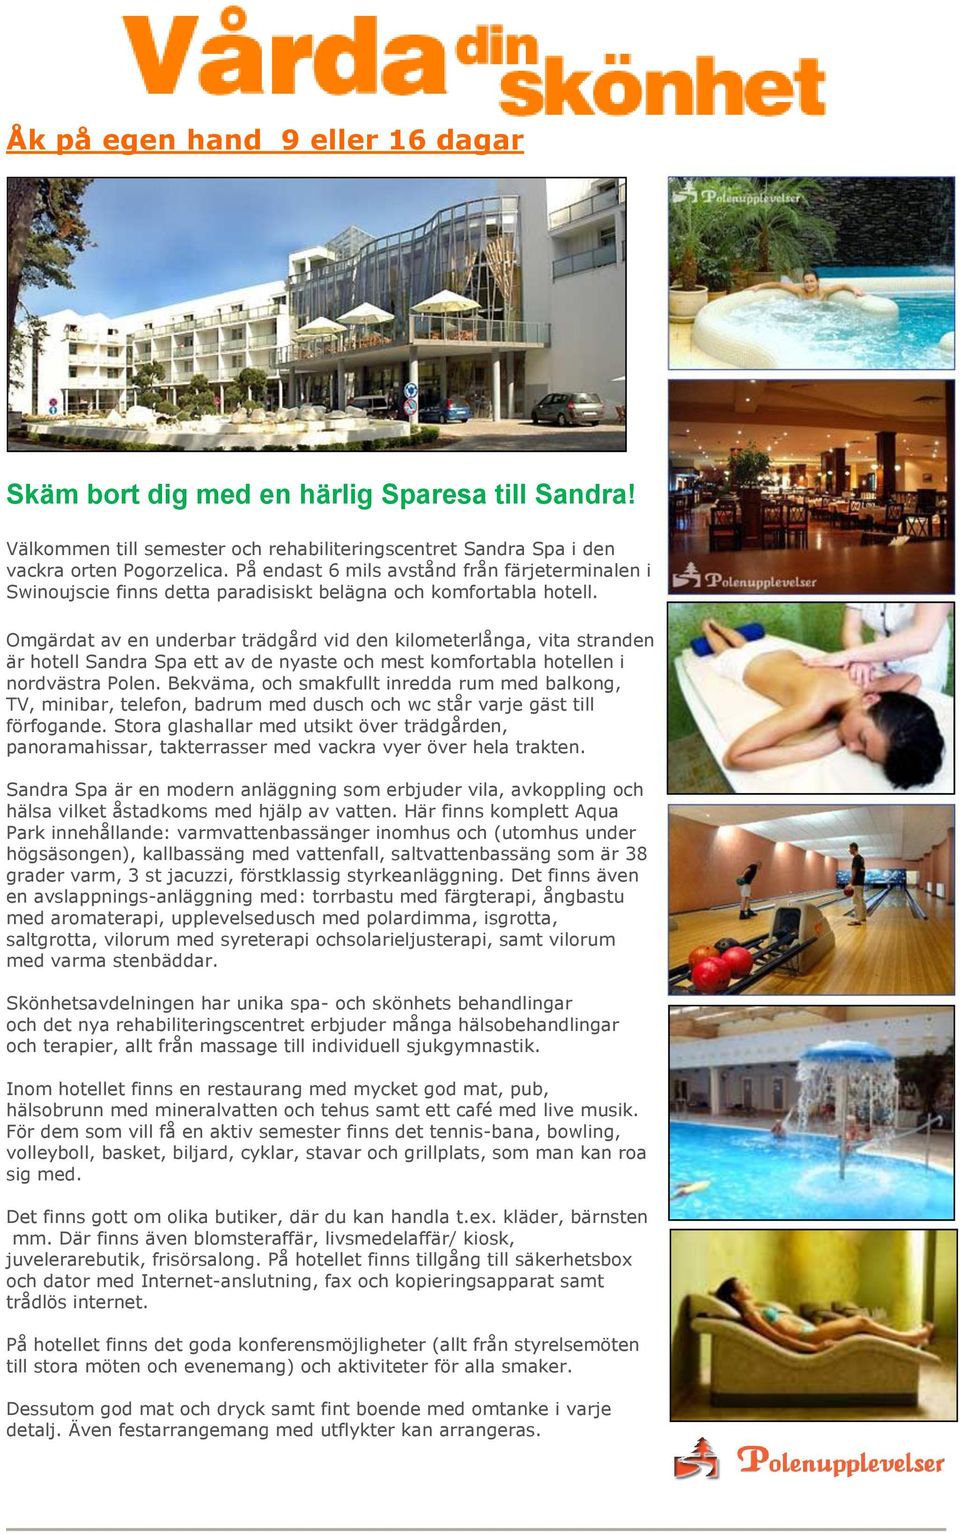 Omgärdat av en underbar trädgård vid den kilometerlånga, vita stranden är hotell Sandra Spa ett av de nyaste och mest komfortabla hotellen i nordvästra Polen.